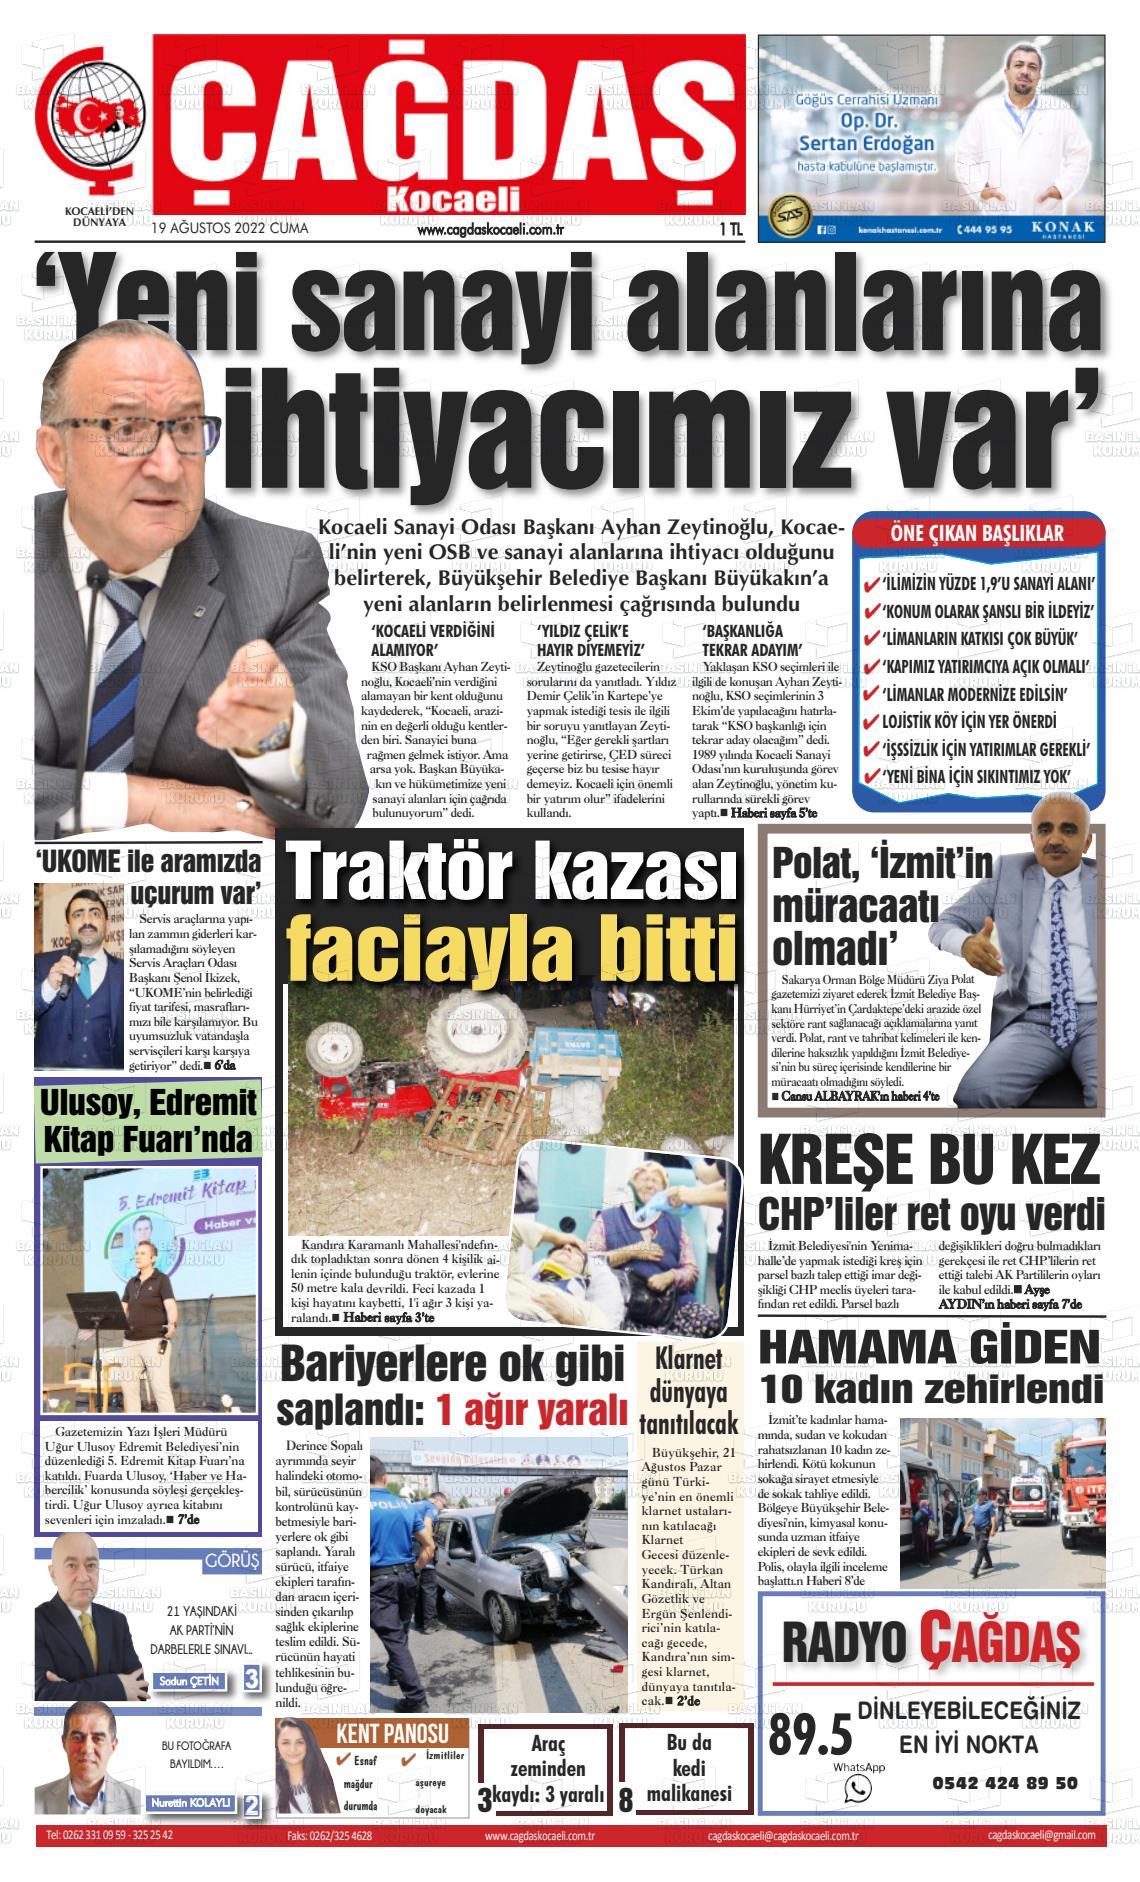 19 Ağustos 2022 Çağdaş Kocaeli Gazete Manşeti